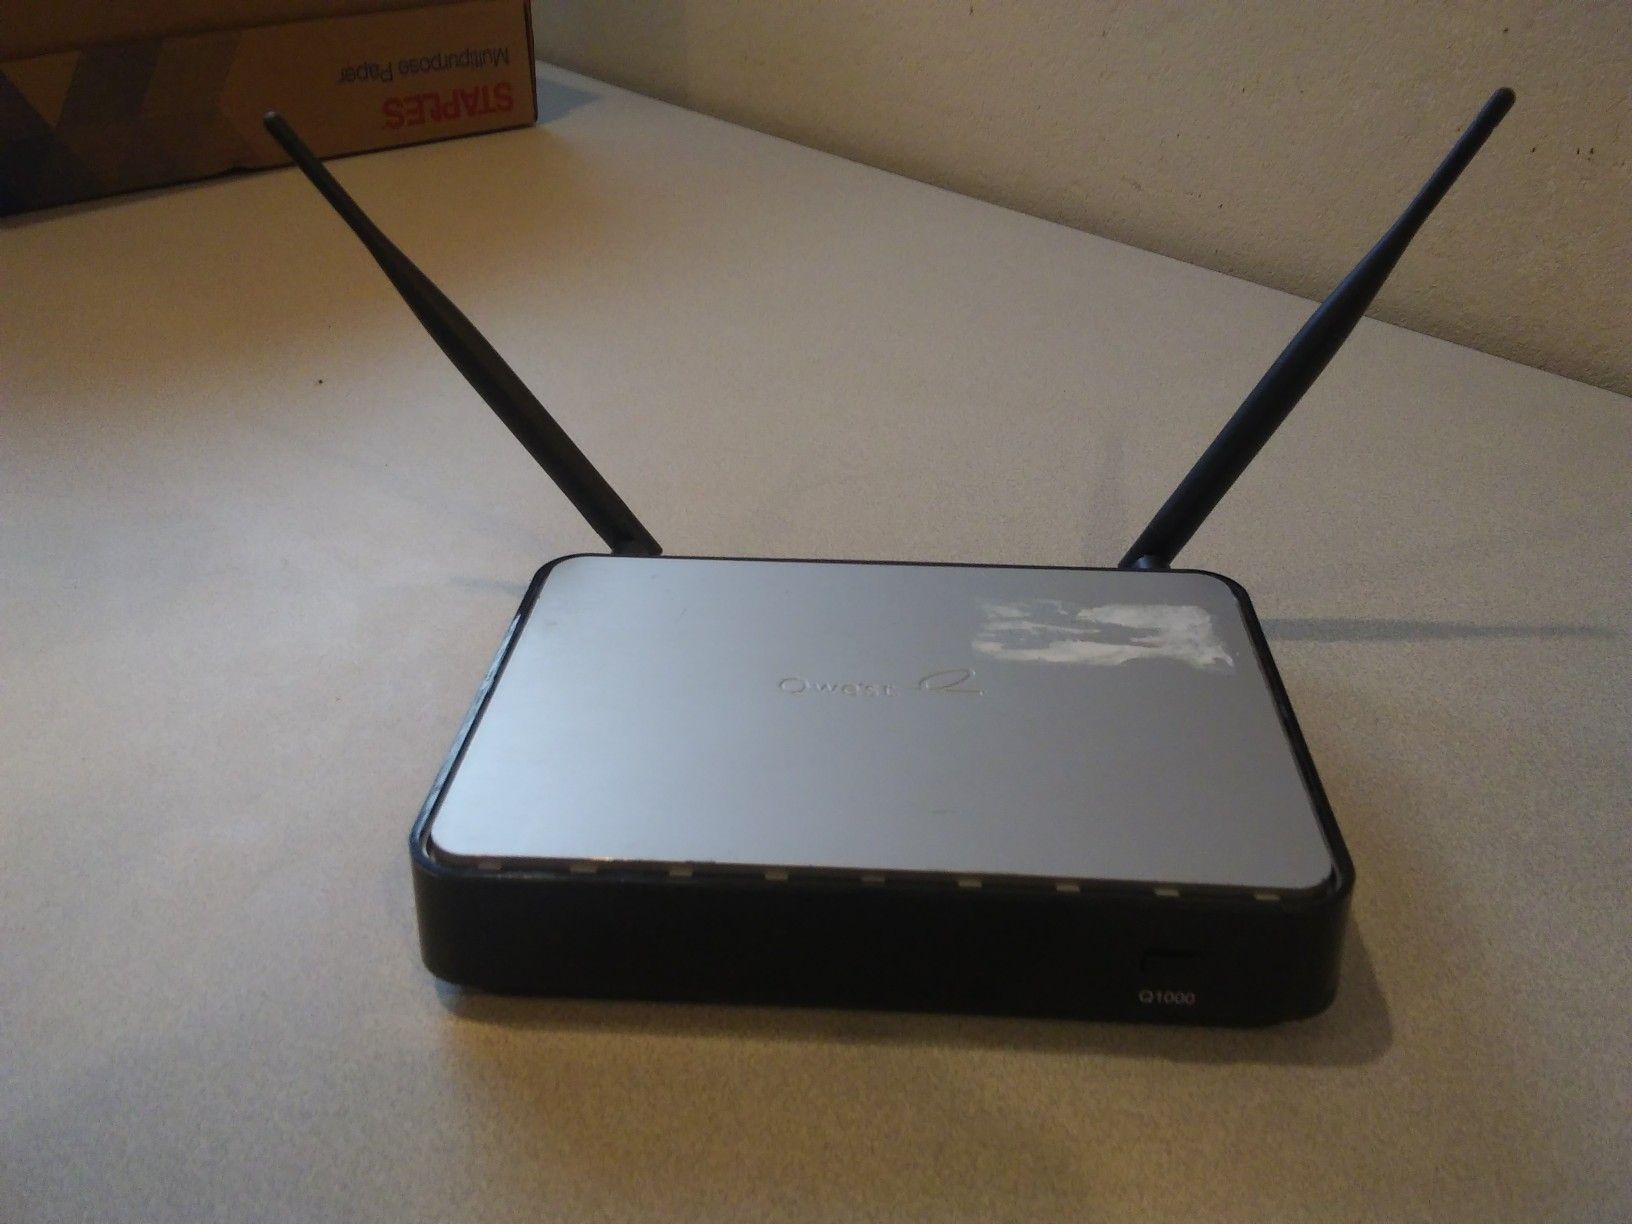 DSL modem w/ wifi